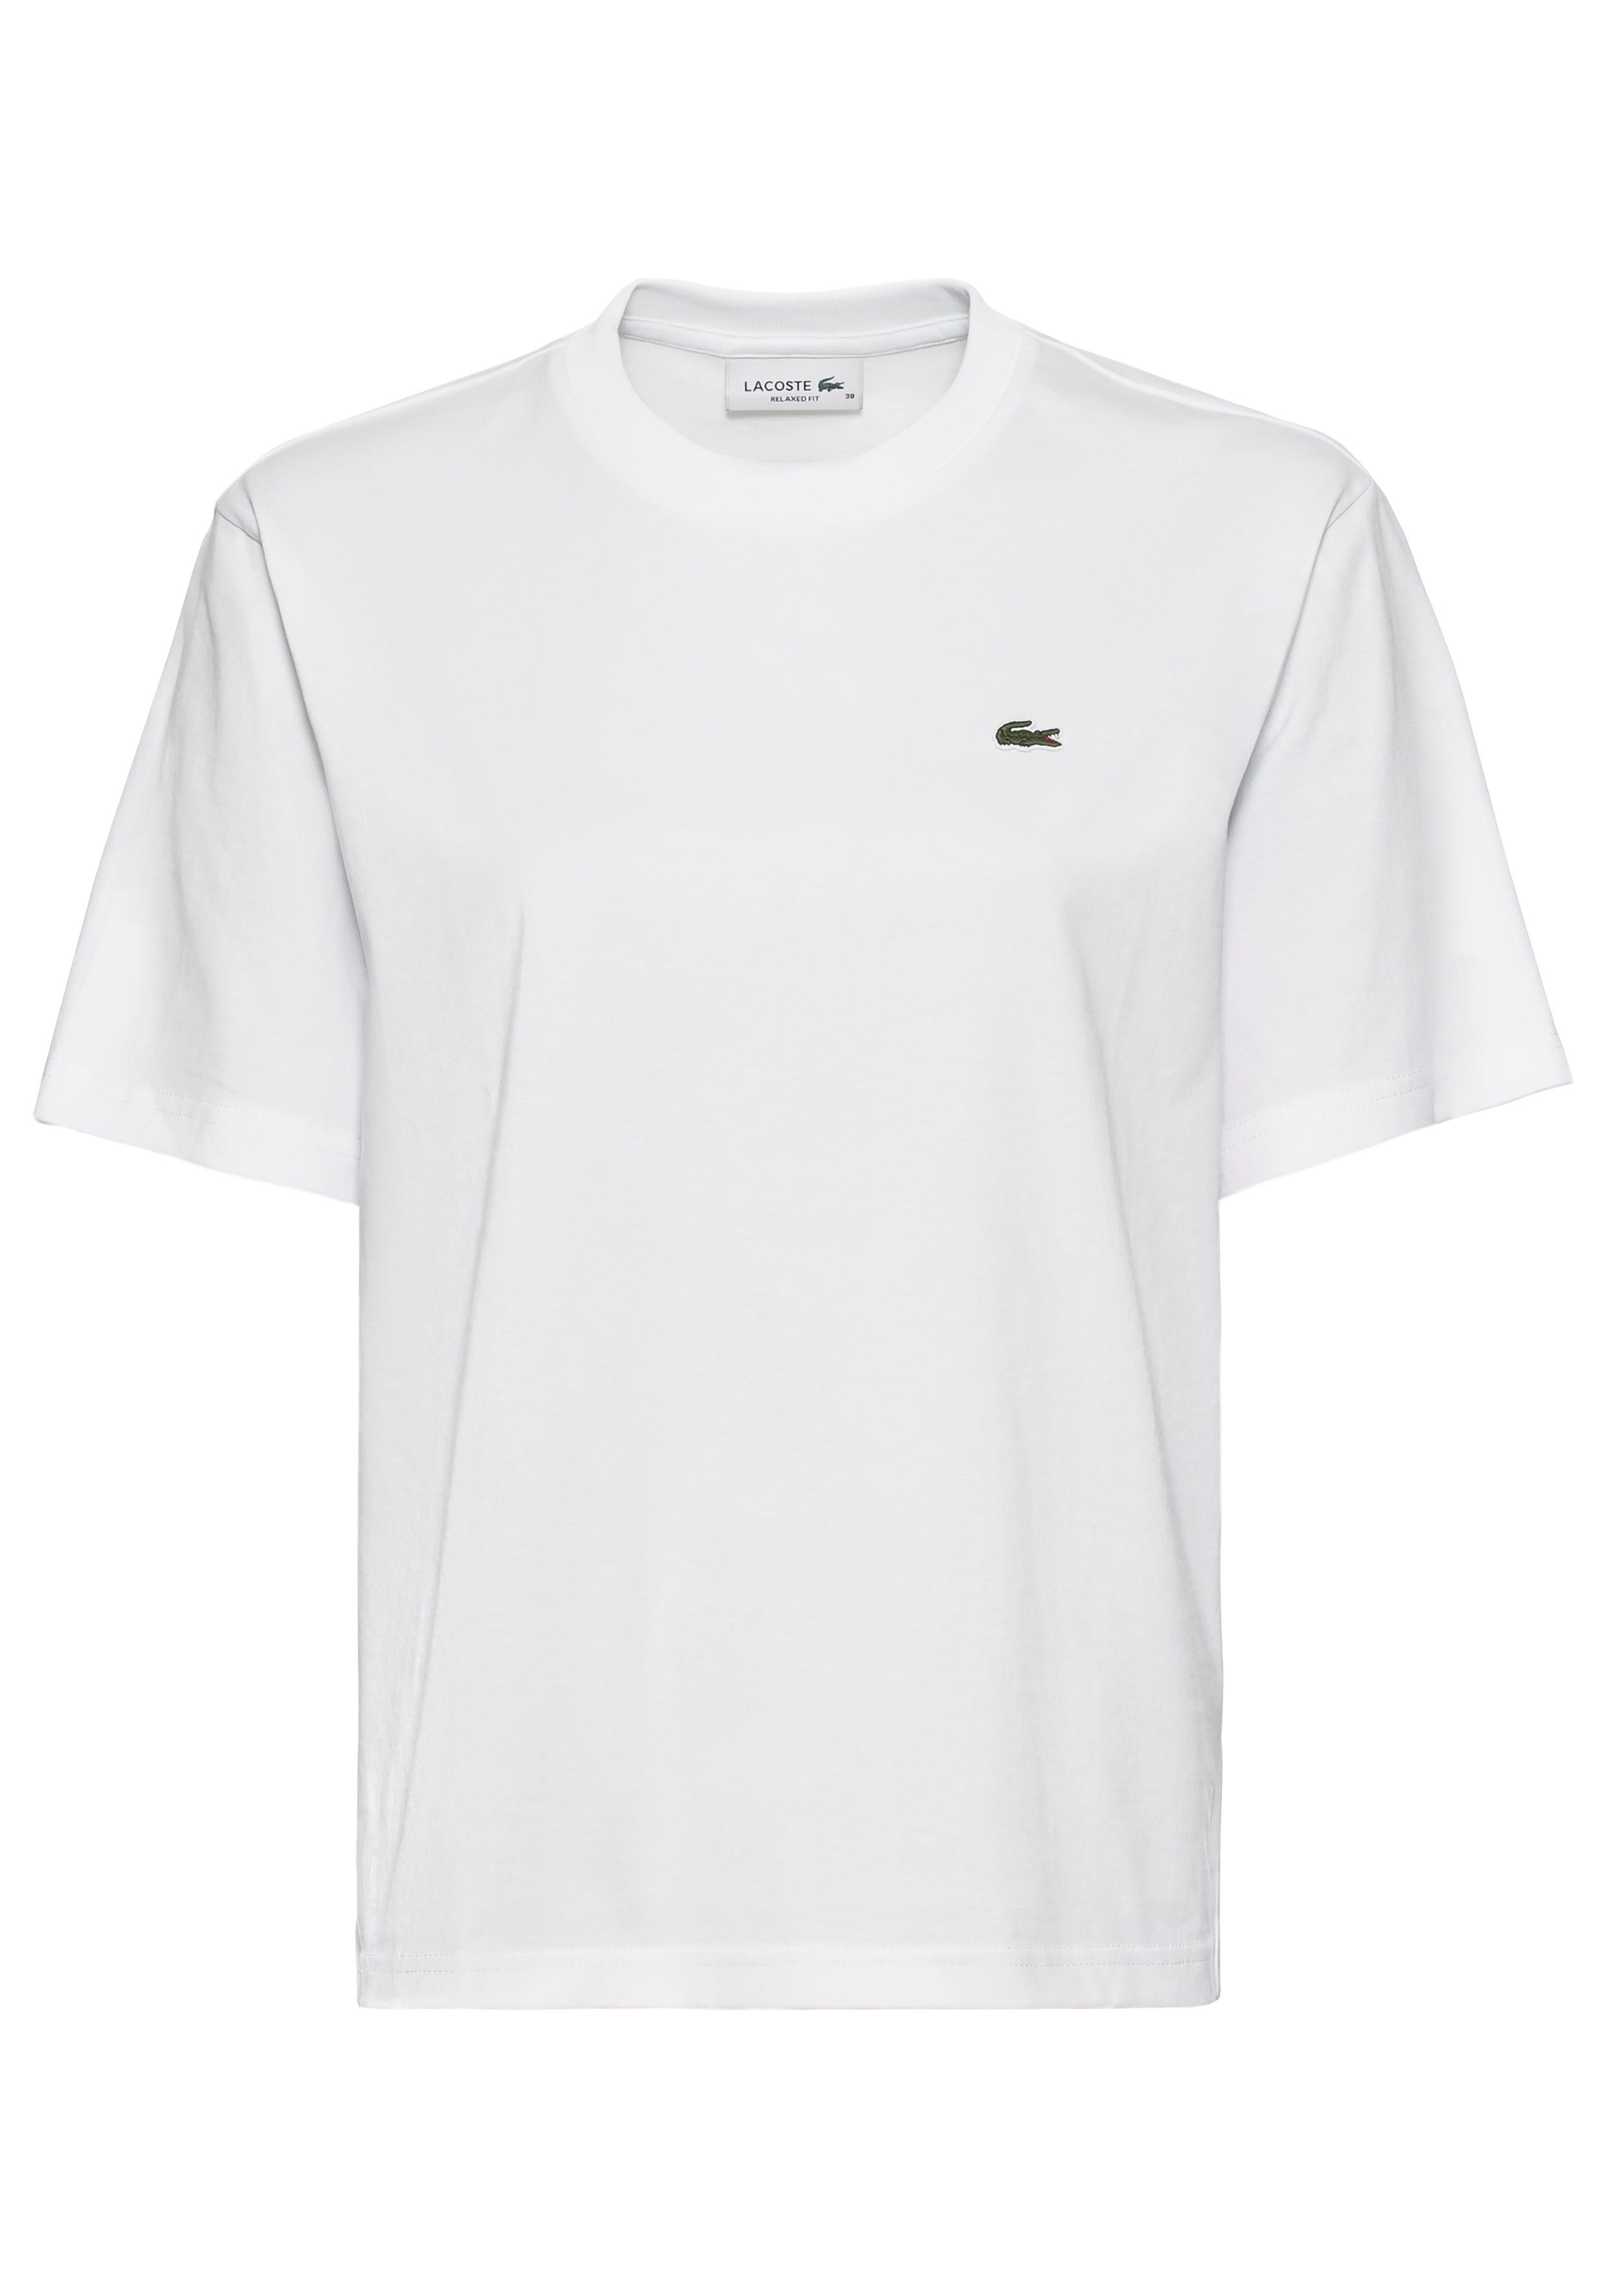 Lacoste Jersey Baumwolle Single T-Shirt, reiner aus